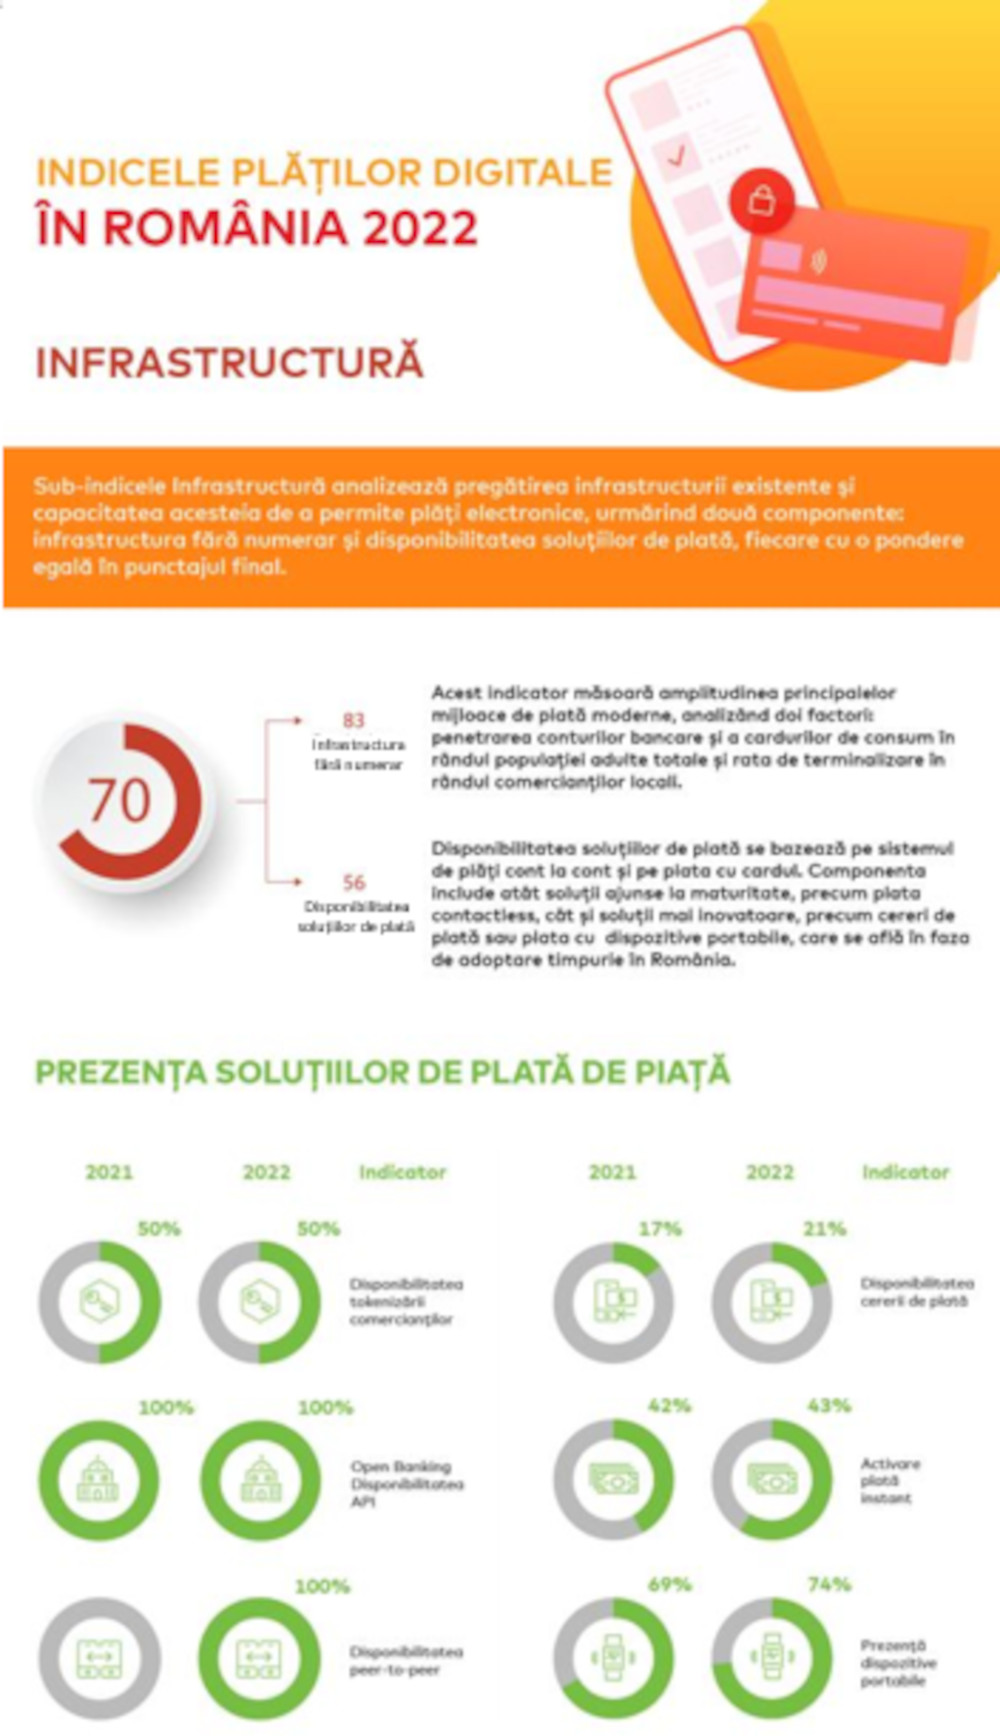 Infografic_Indicele Platilor Digitale 2022_Infrastructura